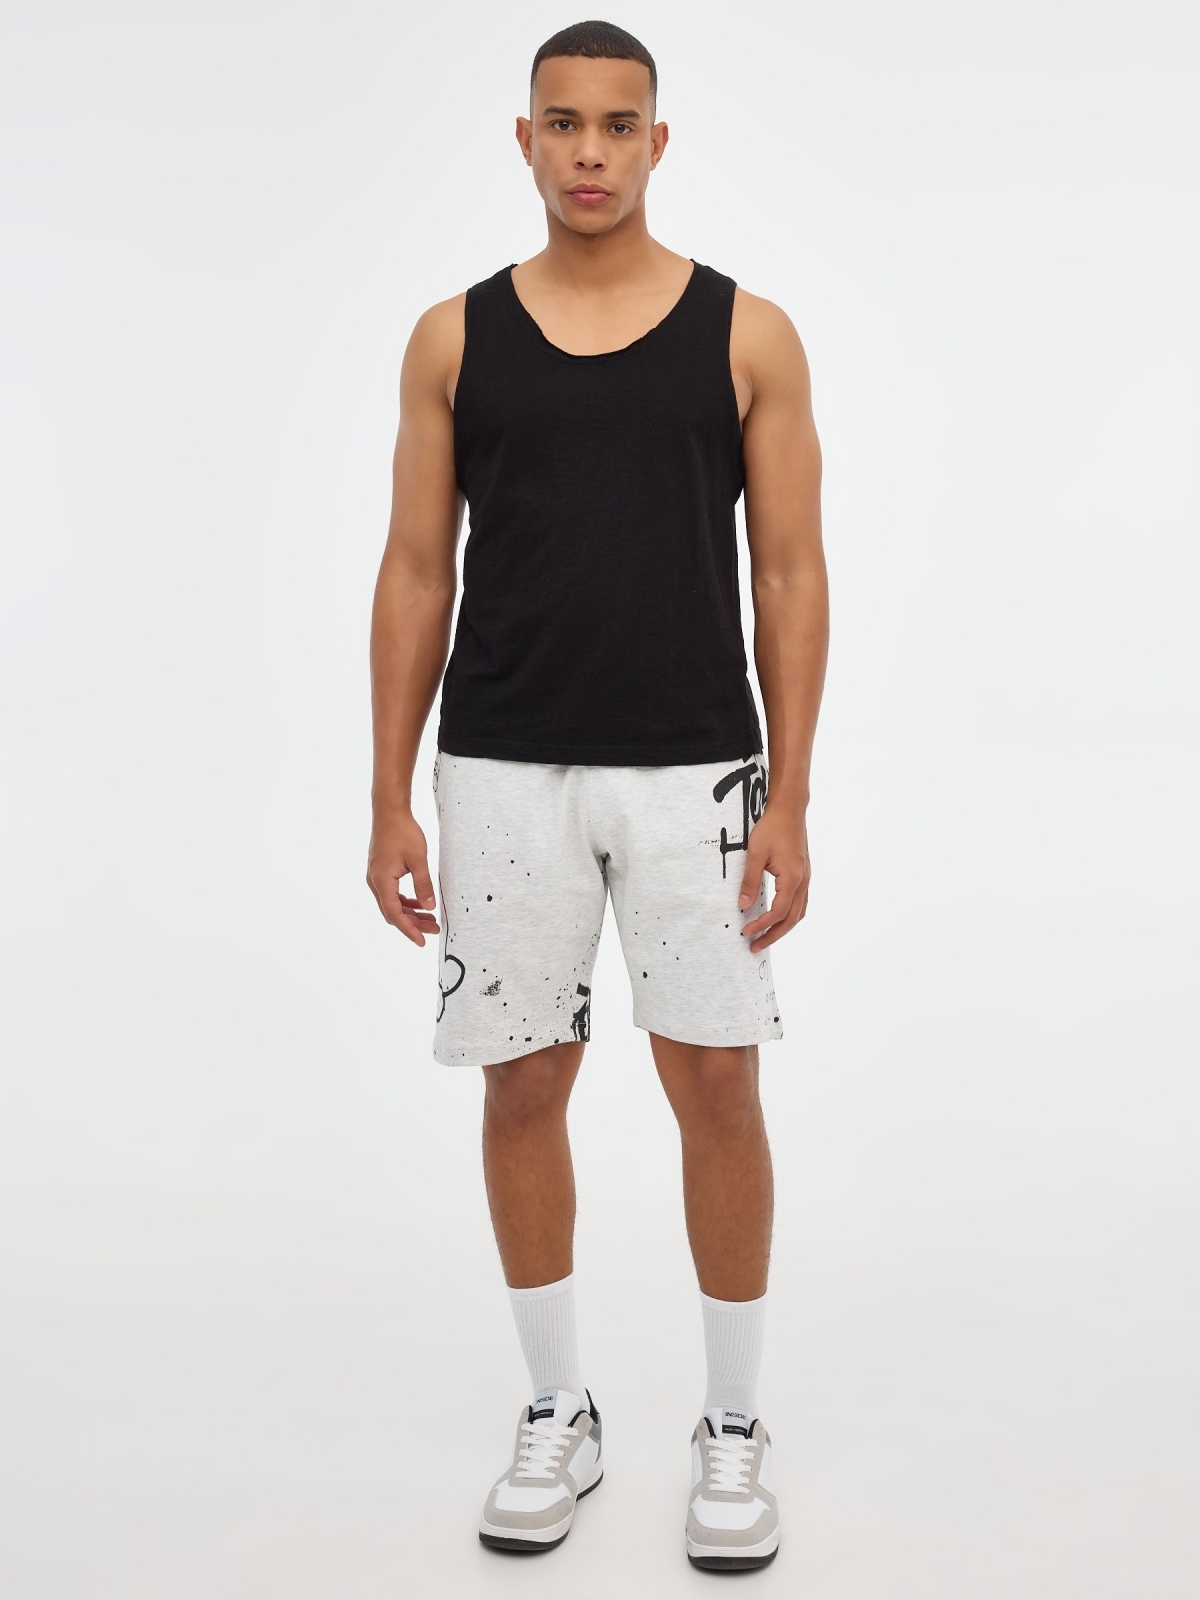 Bermuda jogger shorts with graffiti print light grey vigore front view